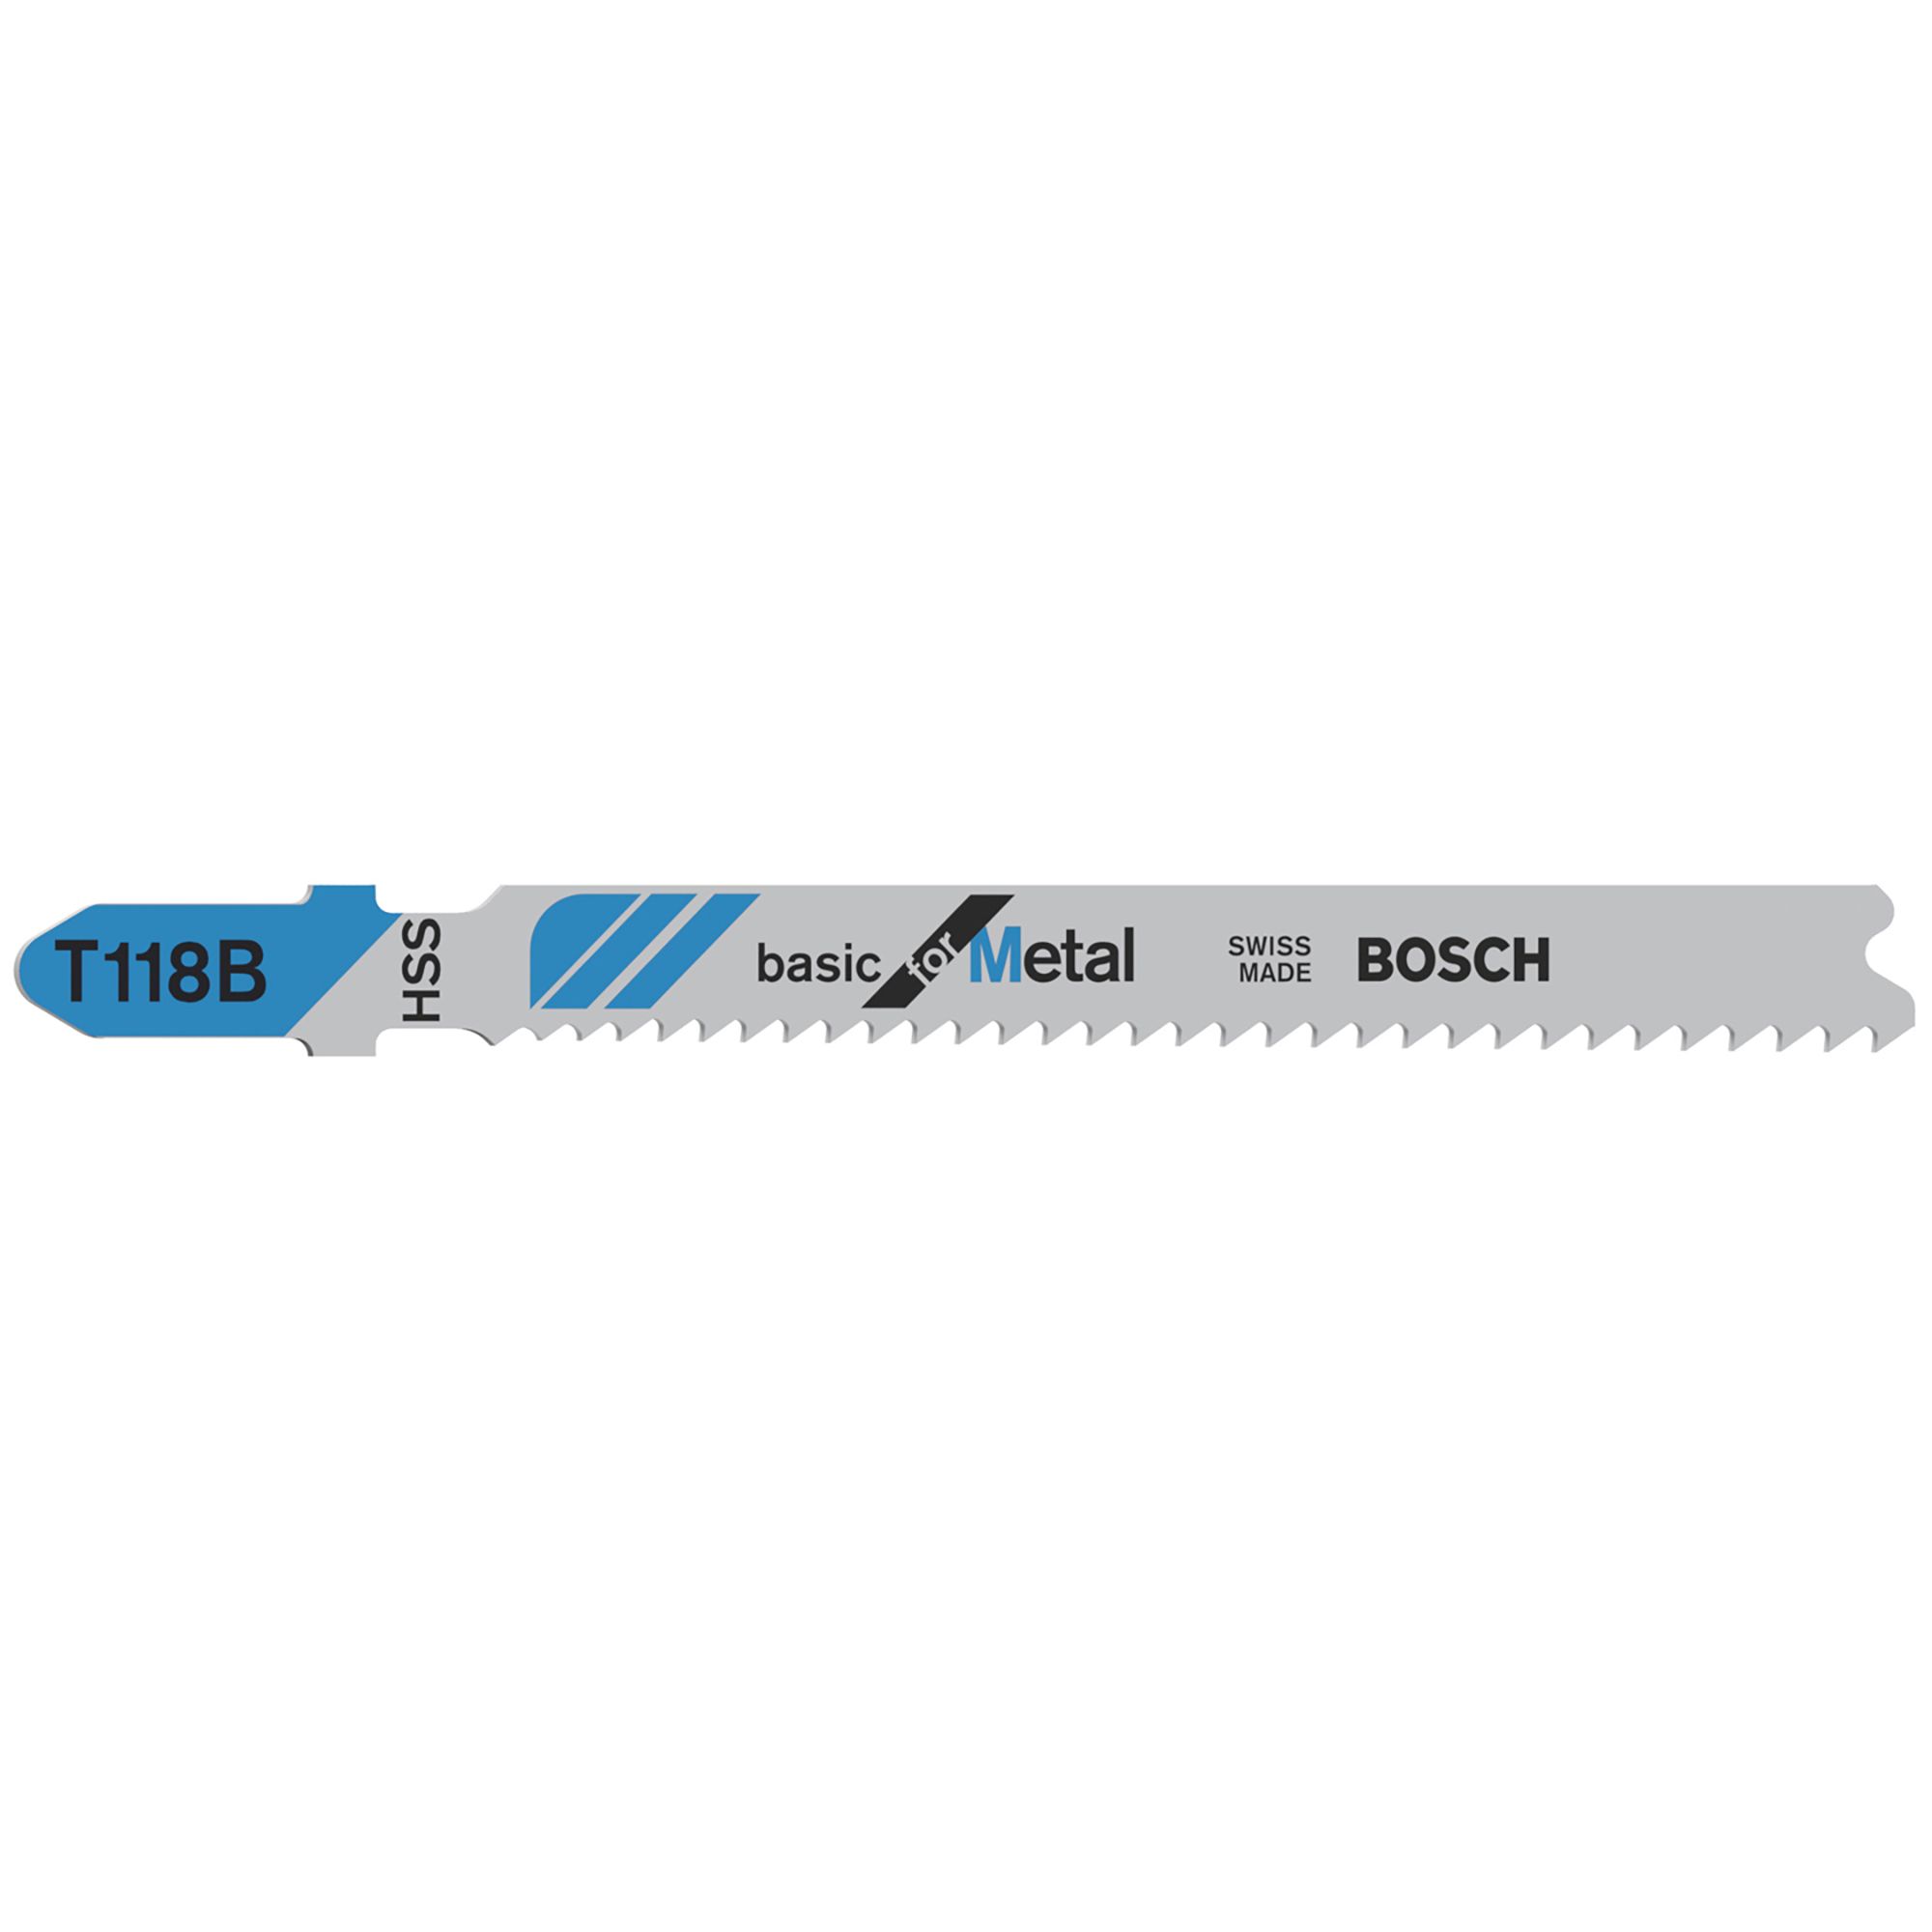 Bosch T-shank Jigsaw blade T118B (L)67mm, Pack of 5